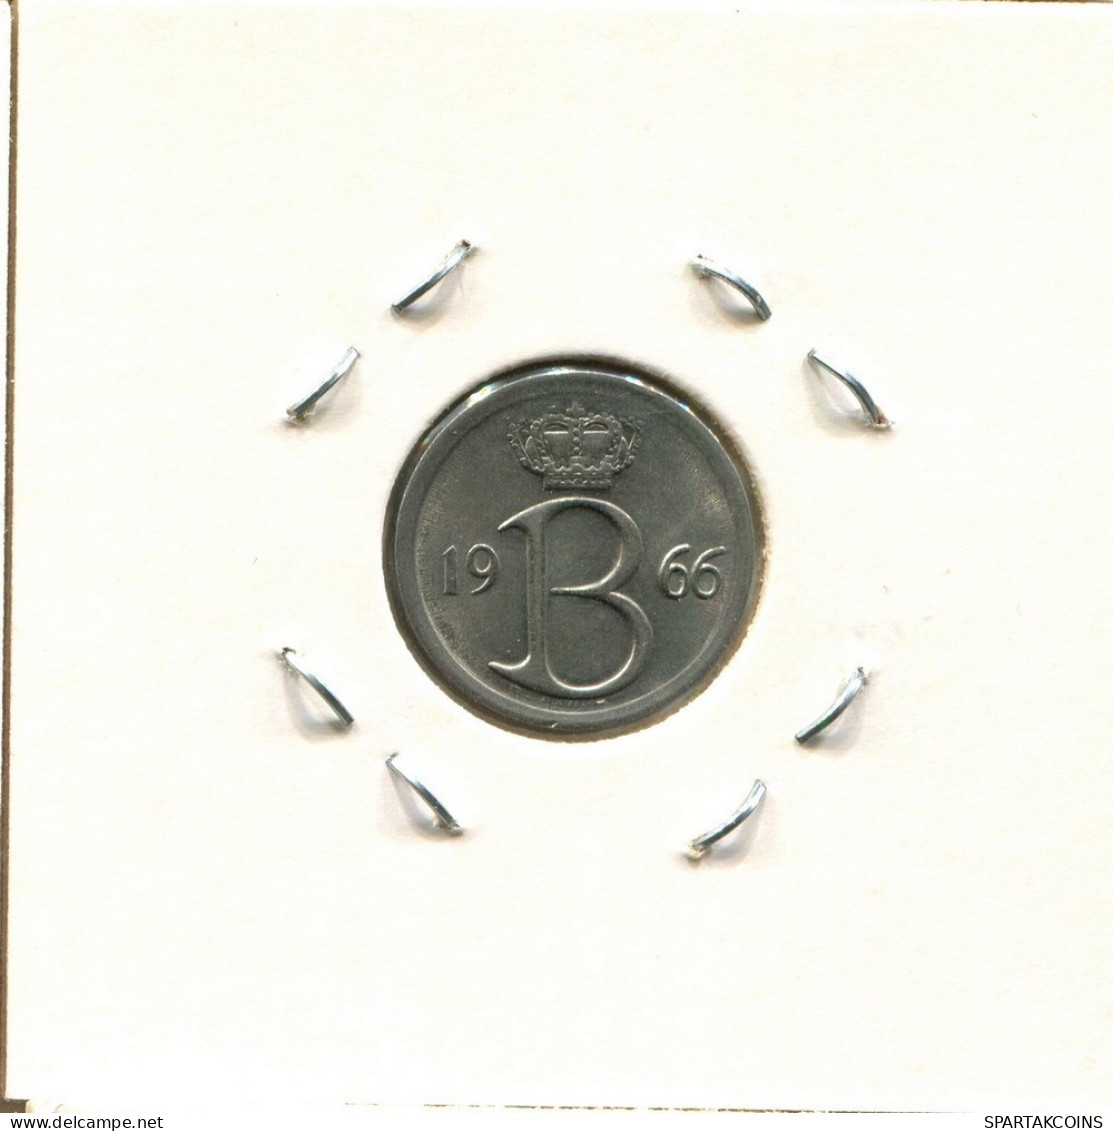 25 CENTIMES 1966 Französisch Text BELGIEN BELGIUM Münze #BA326.D.A - 25 Centimes